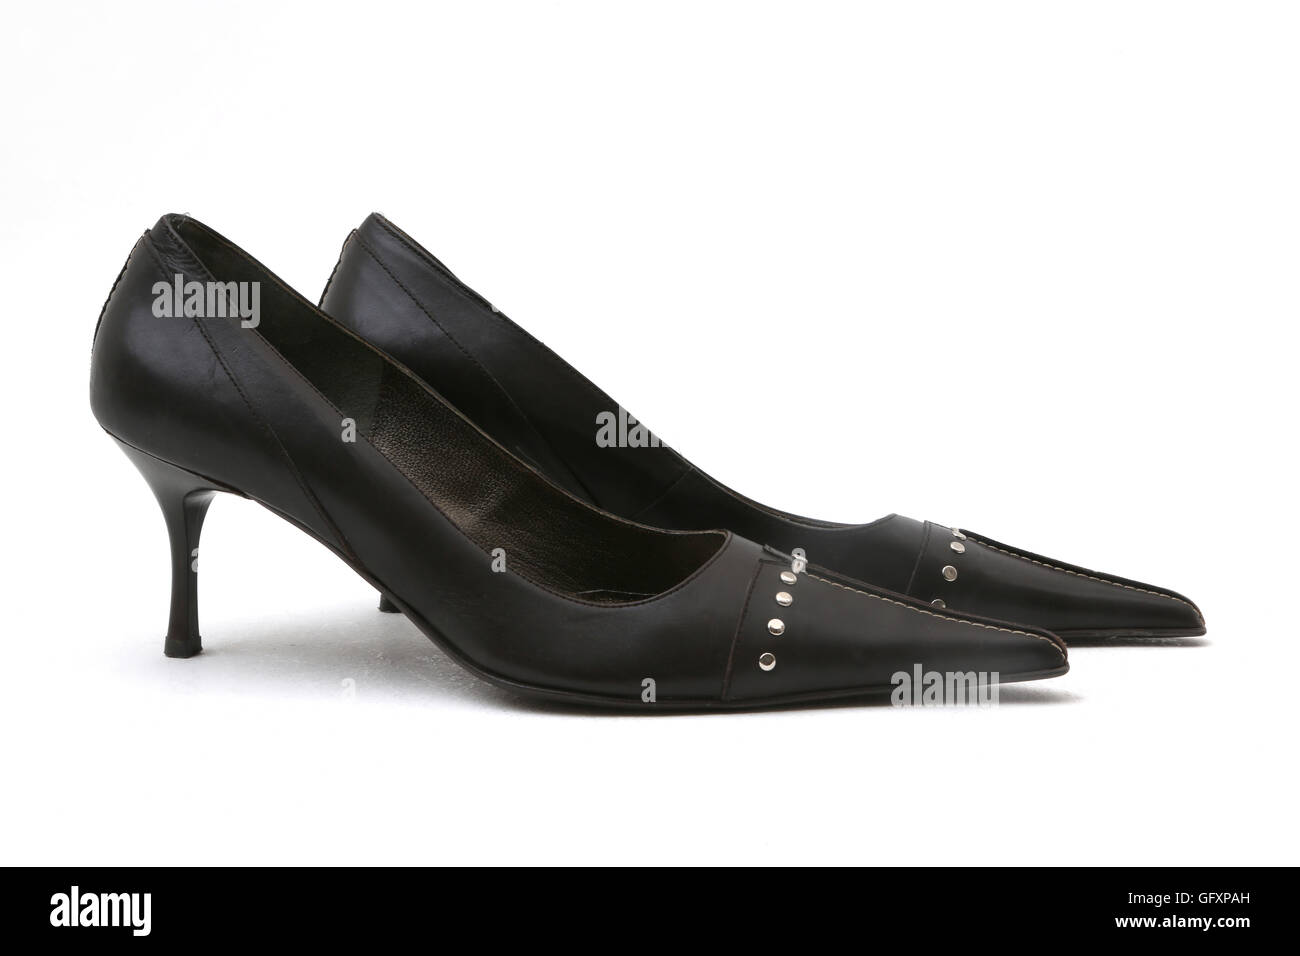 Una coppia in pelle nera Stiletto Heel scarpe con tacchetti Foto Stock